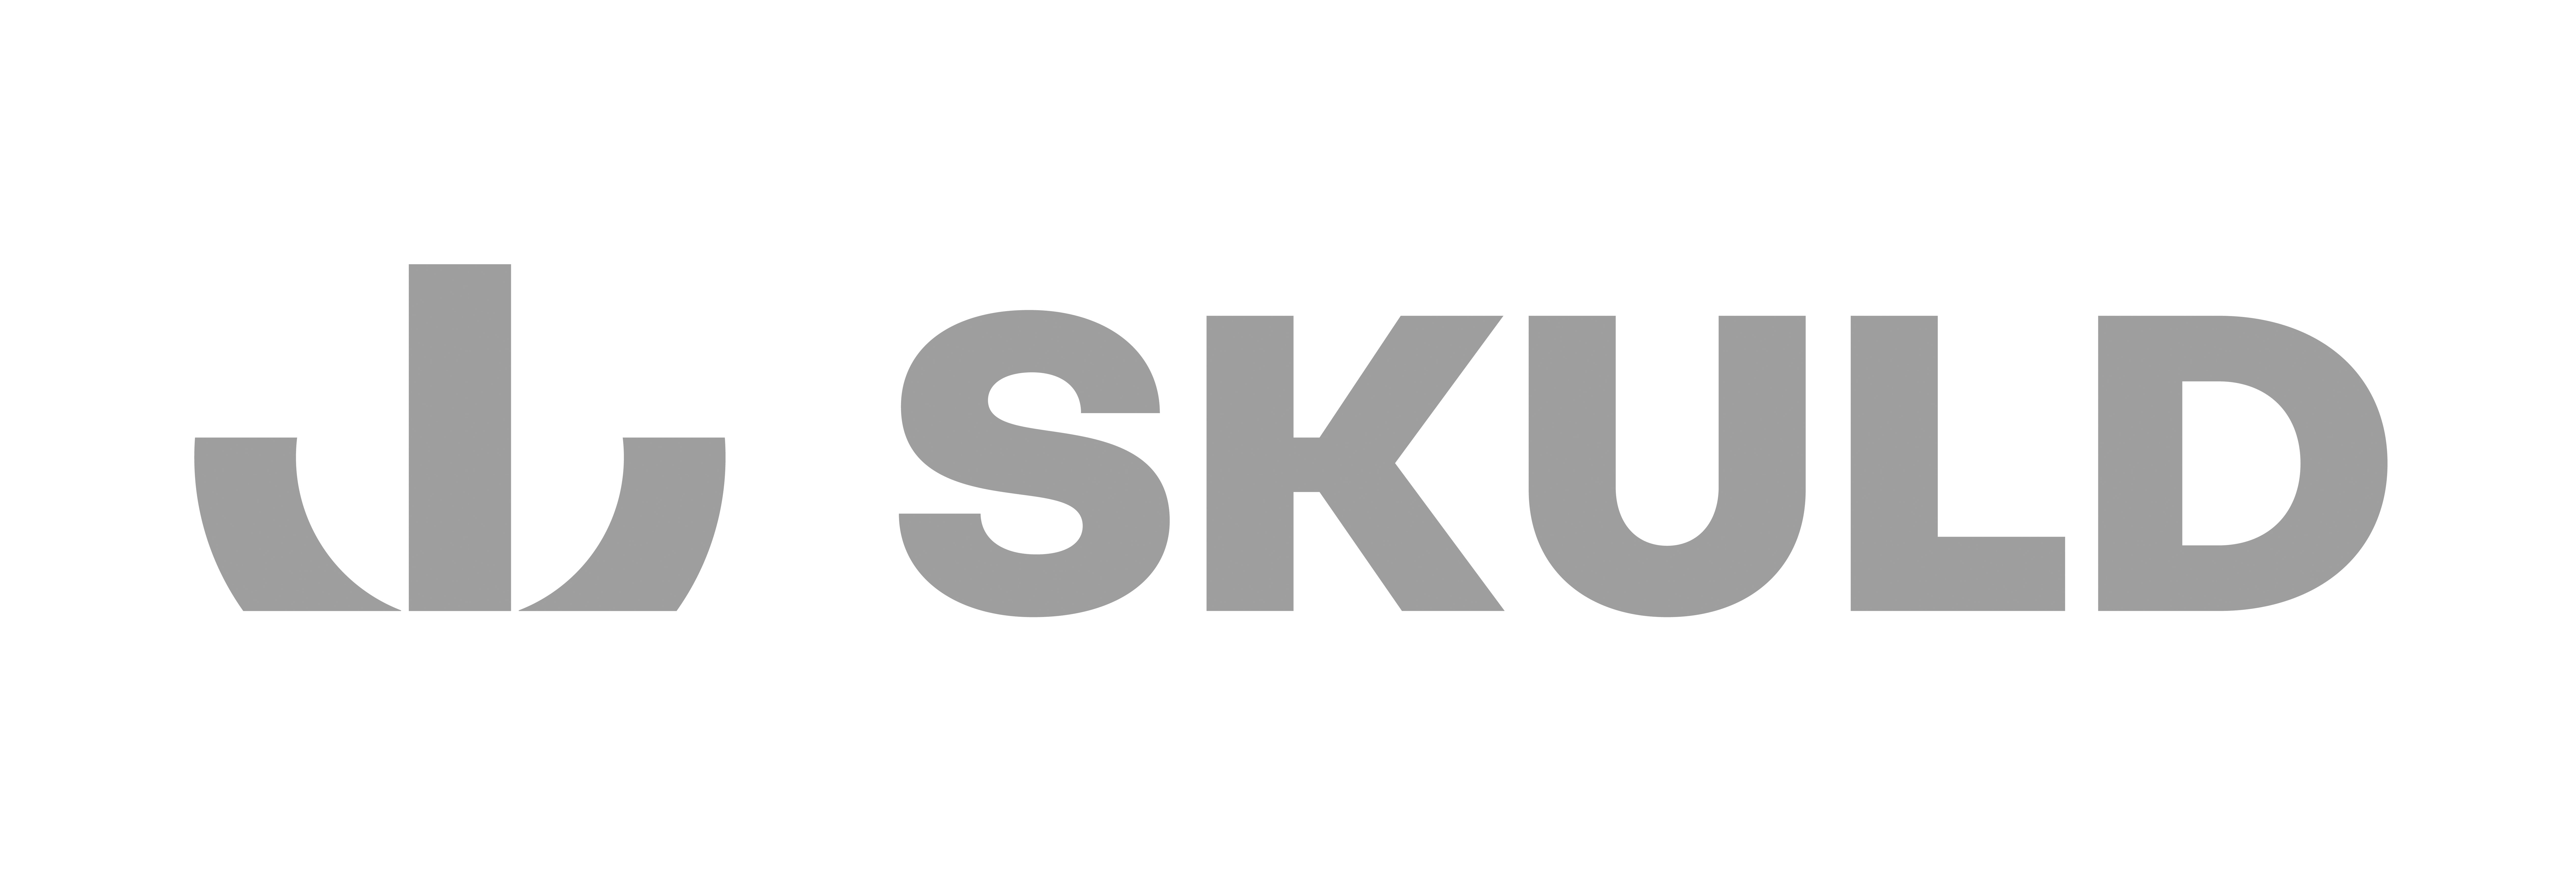 Skuld_logo_lockup_grey_large